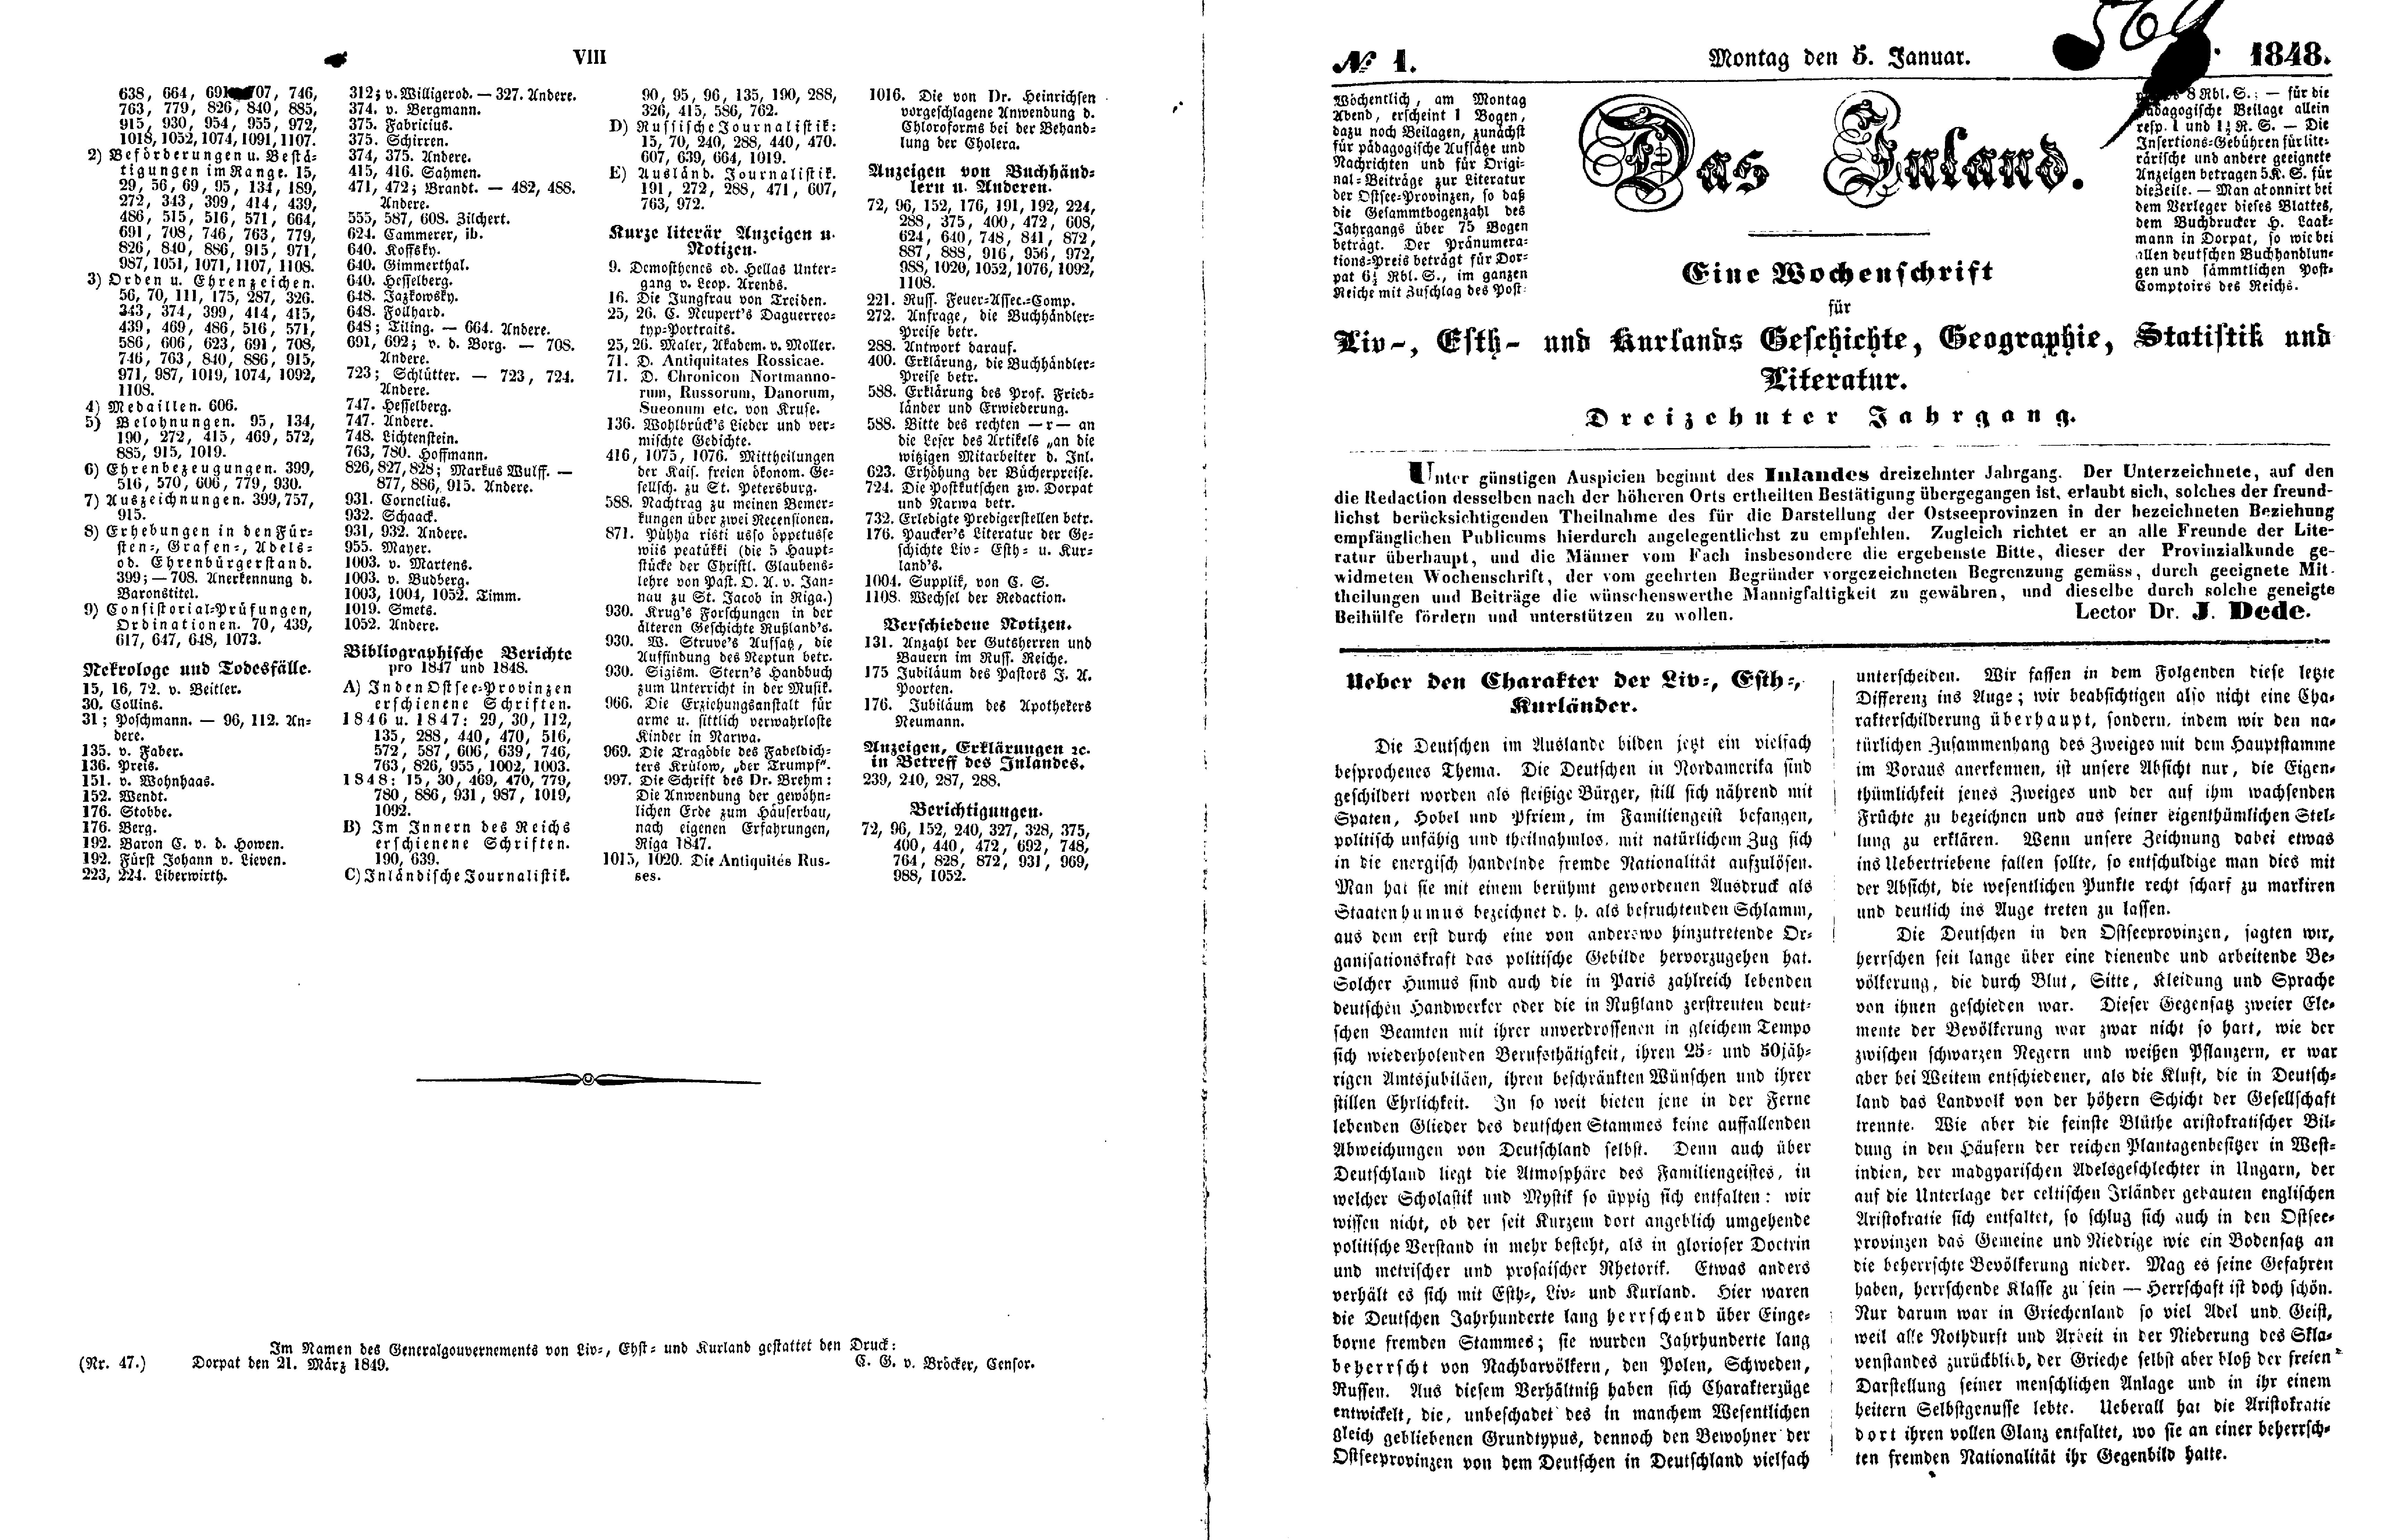 Ueber den Charakter der Liv-, Esth- und Kurländer (1848) | 1. (VIII-2) Указатель, Основной текст